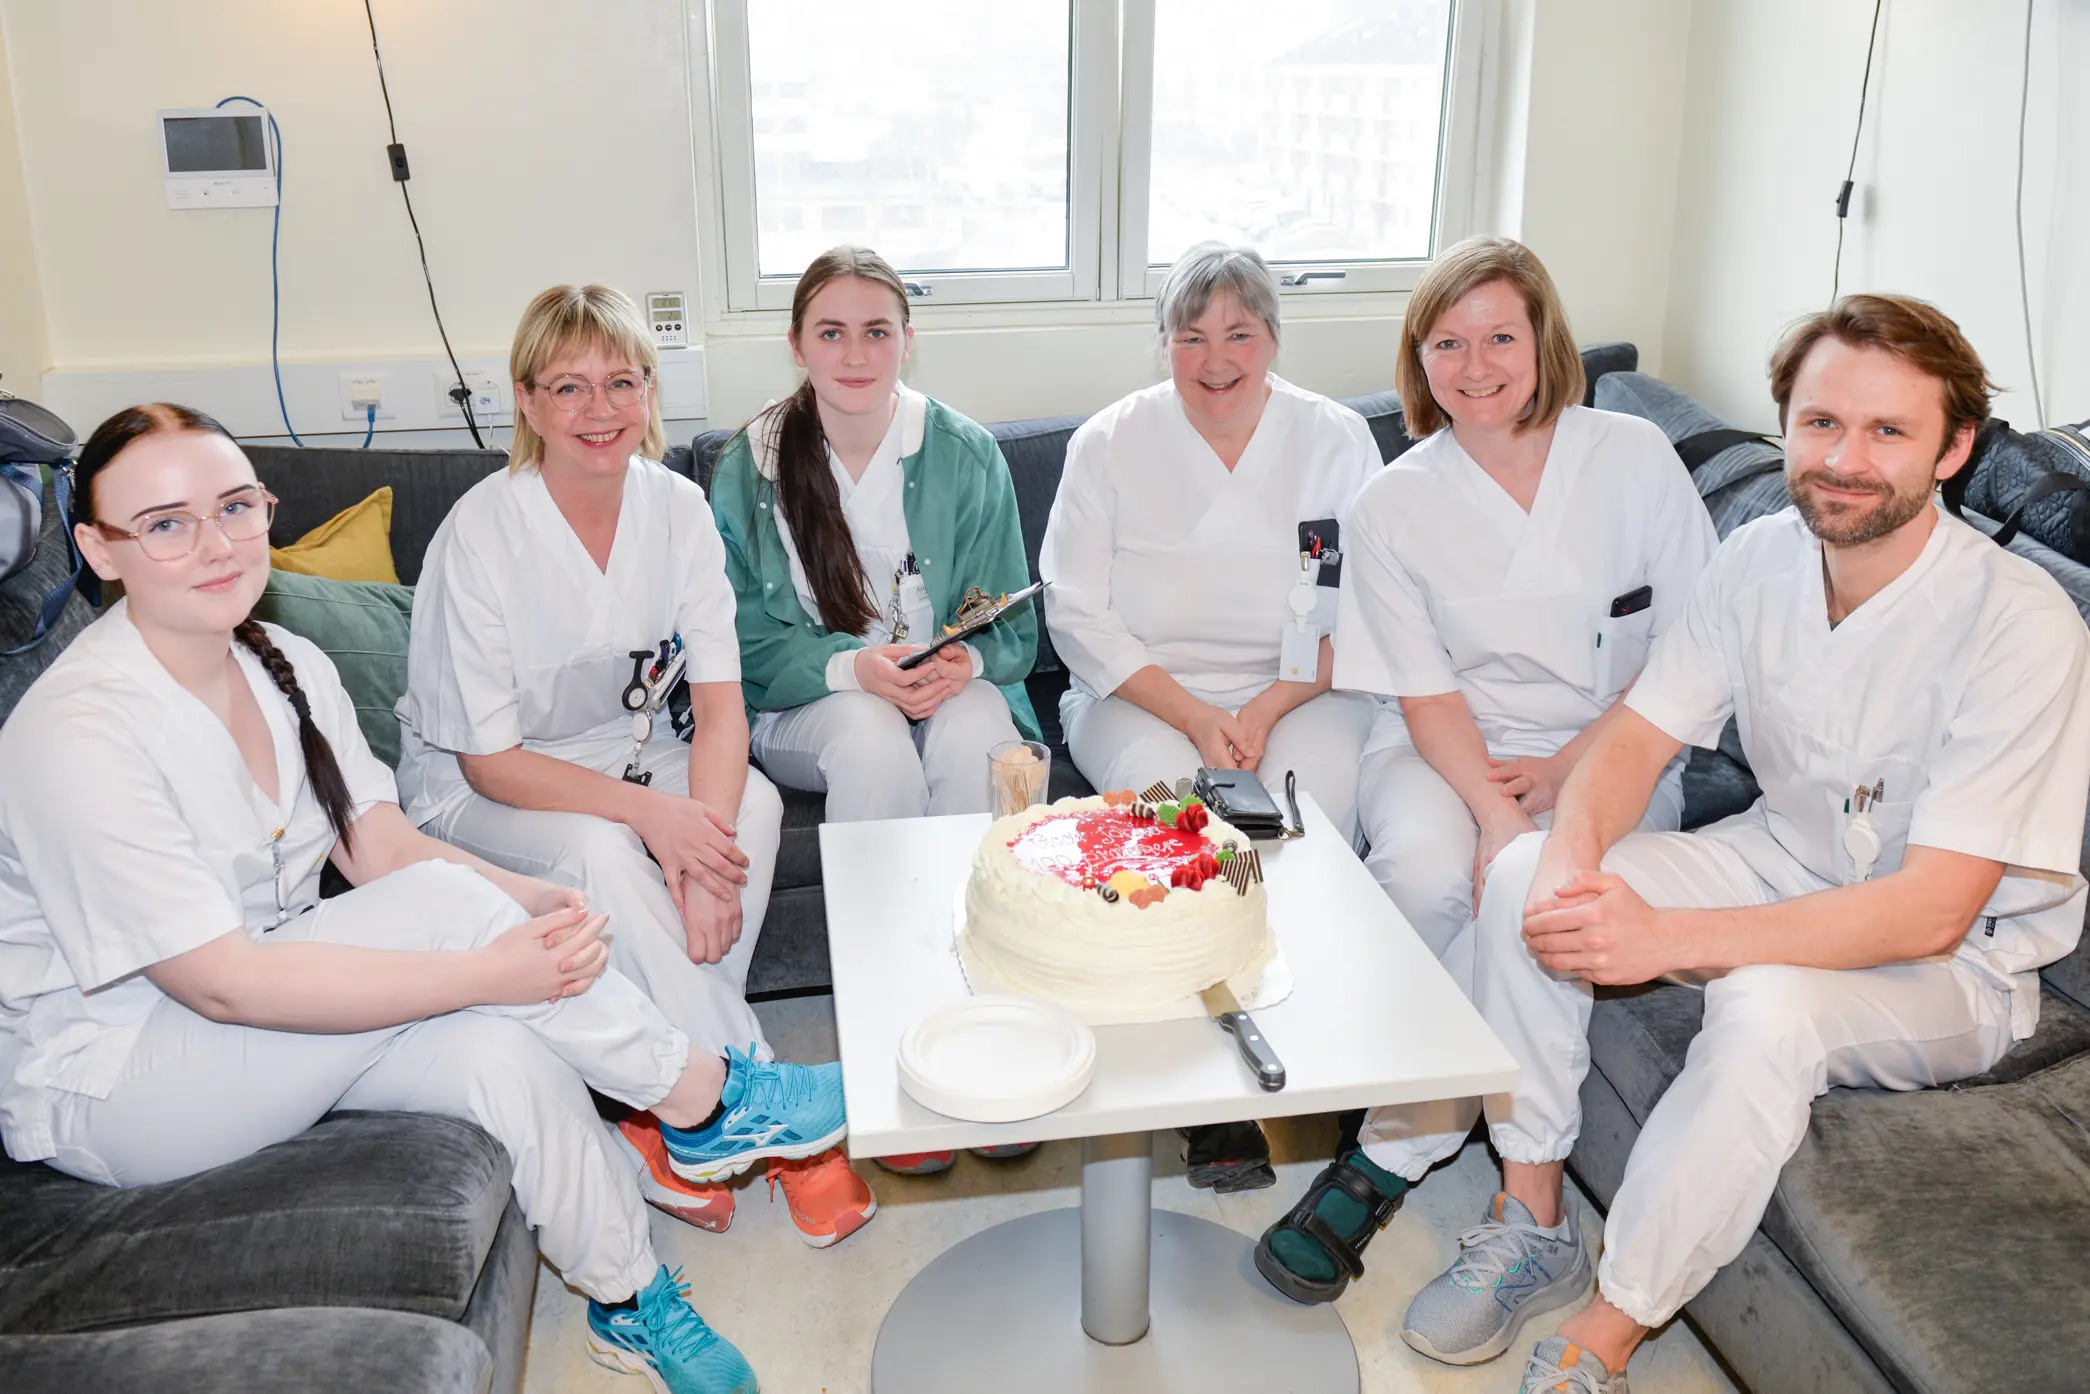 Seks hvitkledte mennesker sitter rundt et bord med kake